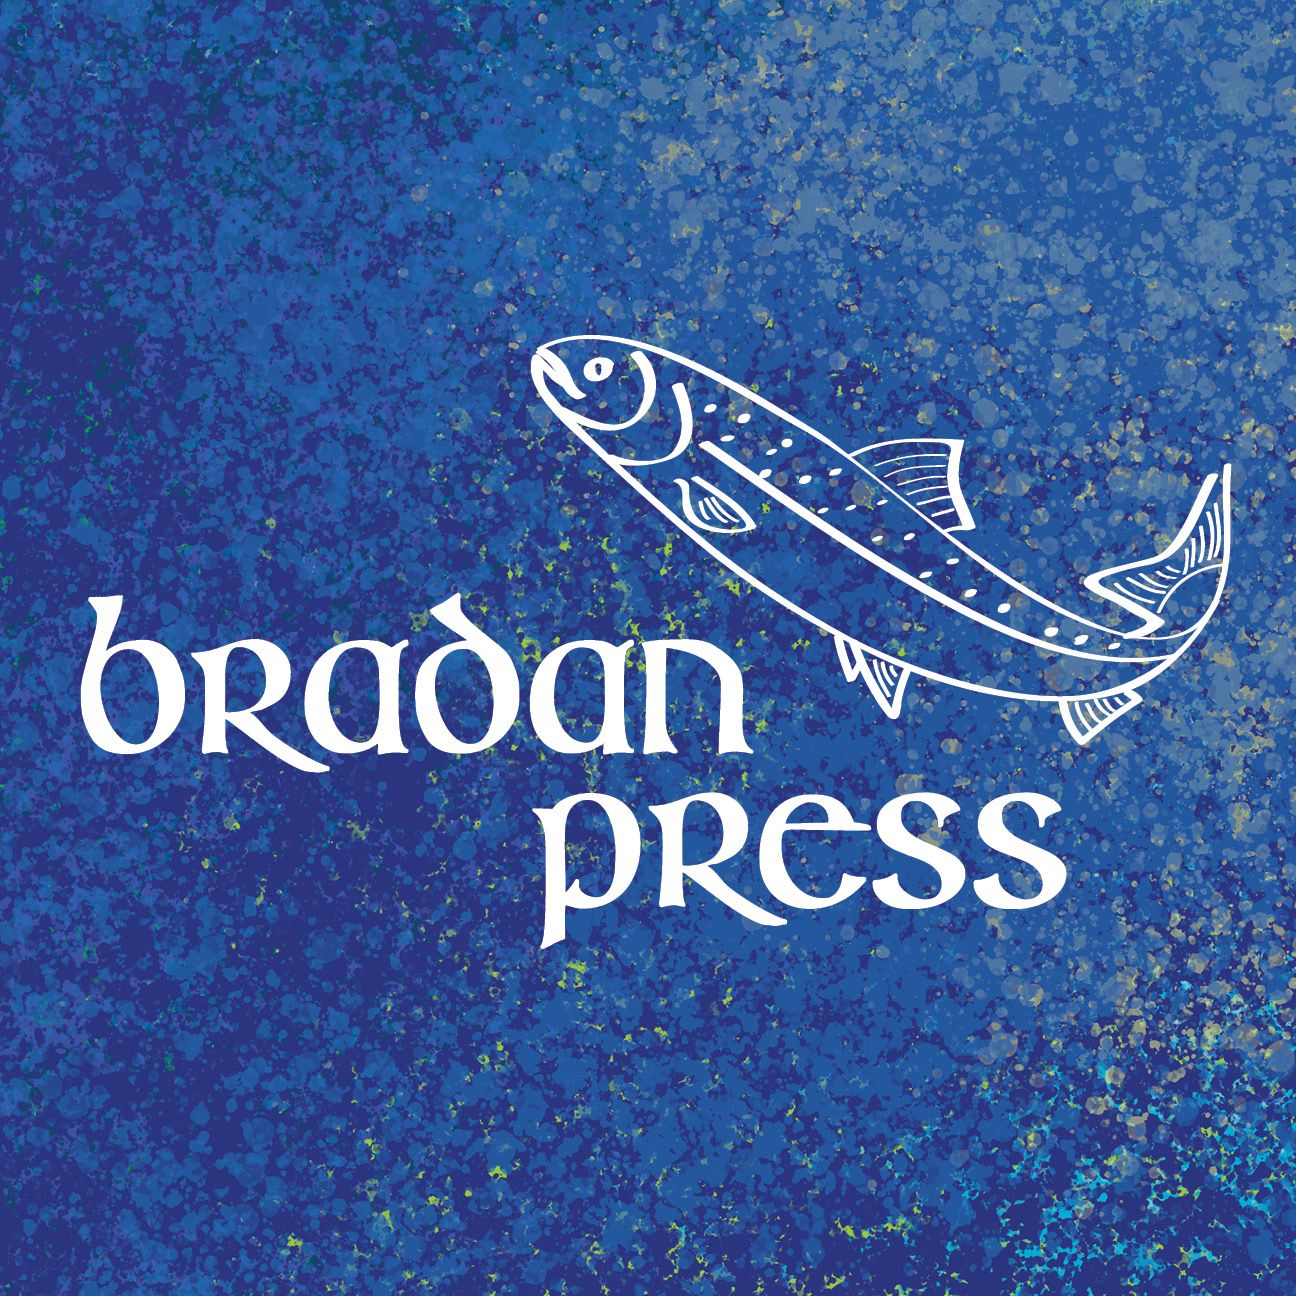 Bradan Press